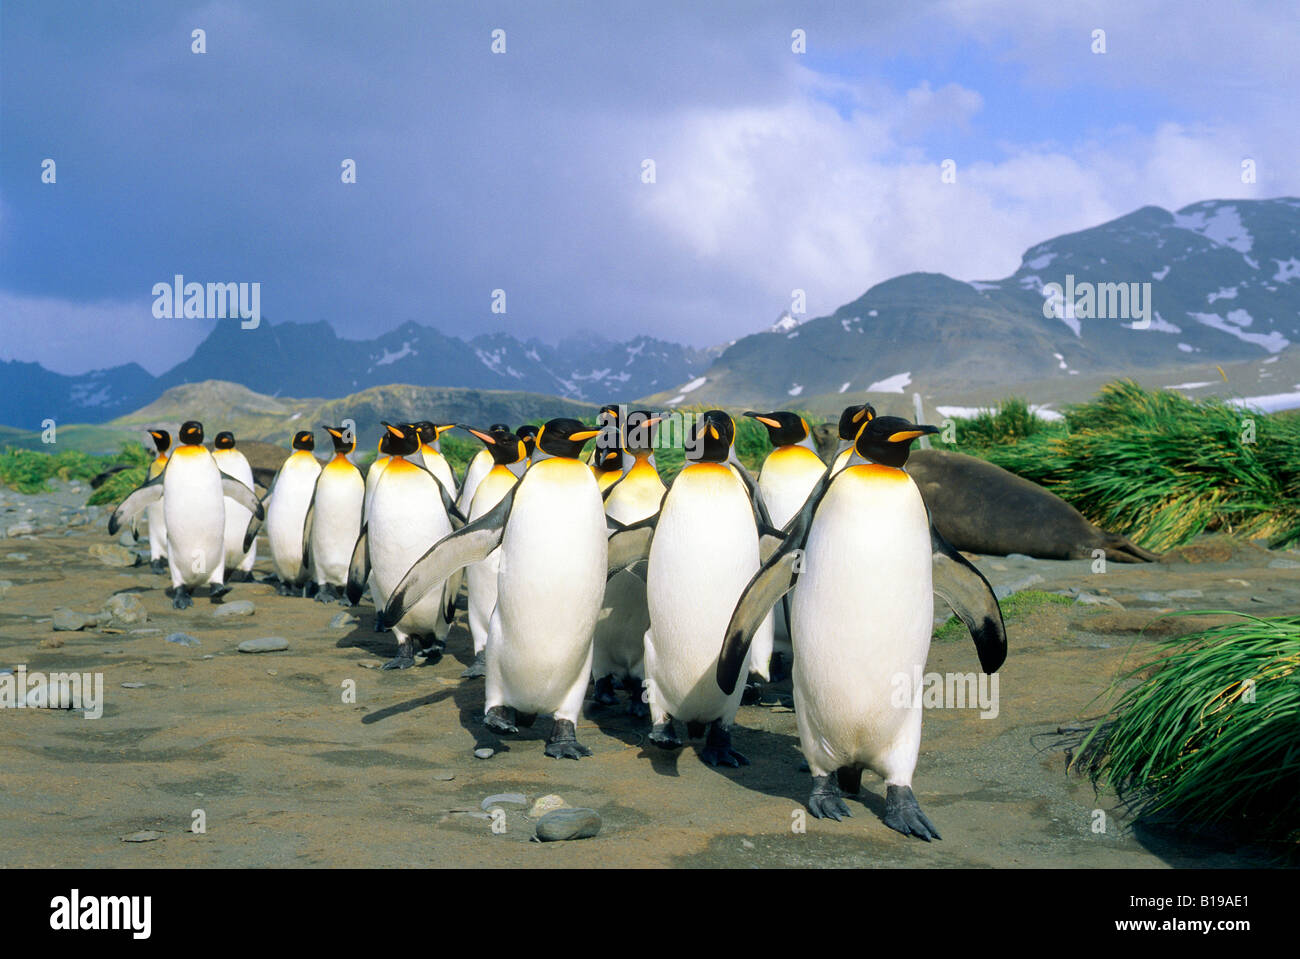 König Penguins(Aptenodytes patagonicus) Rückkehr von einer Futtersuche Reise auf hoher See, Salisbury Plains, South Georgia Island Süd A Stockfoto